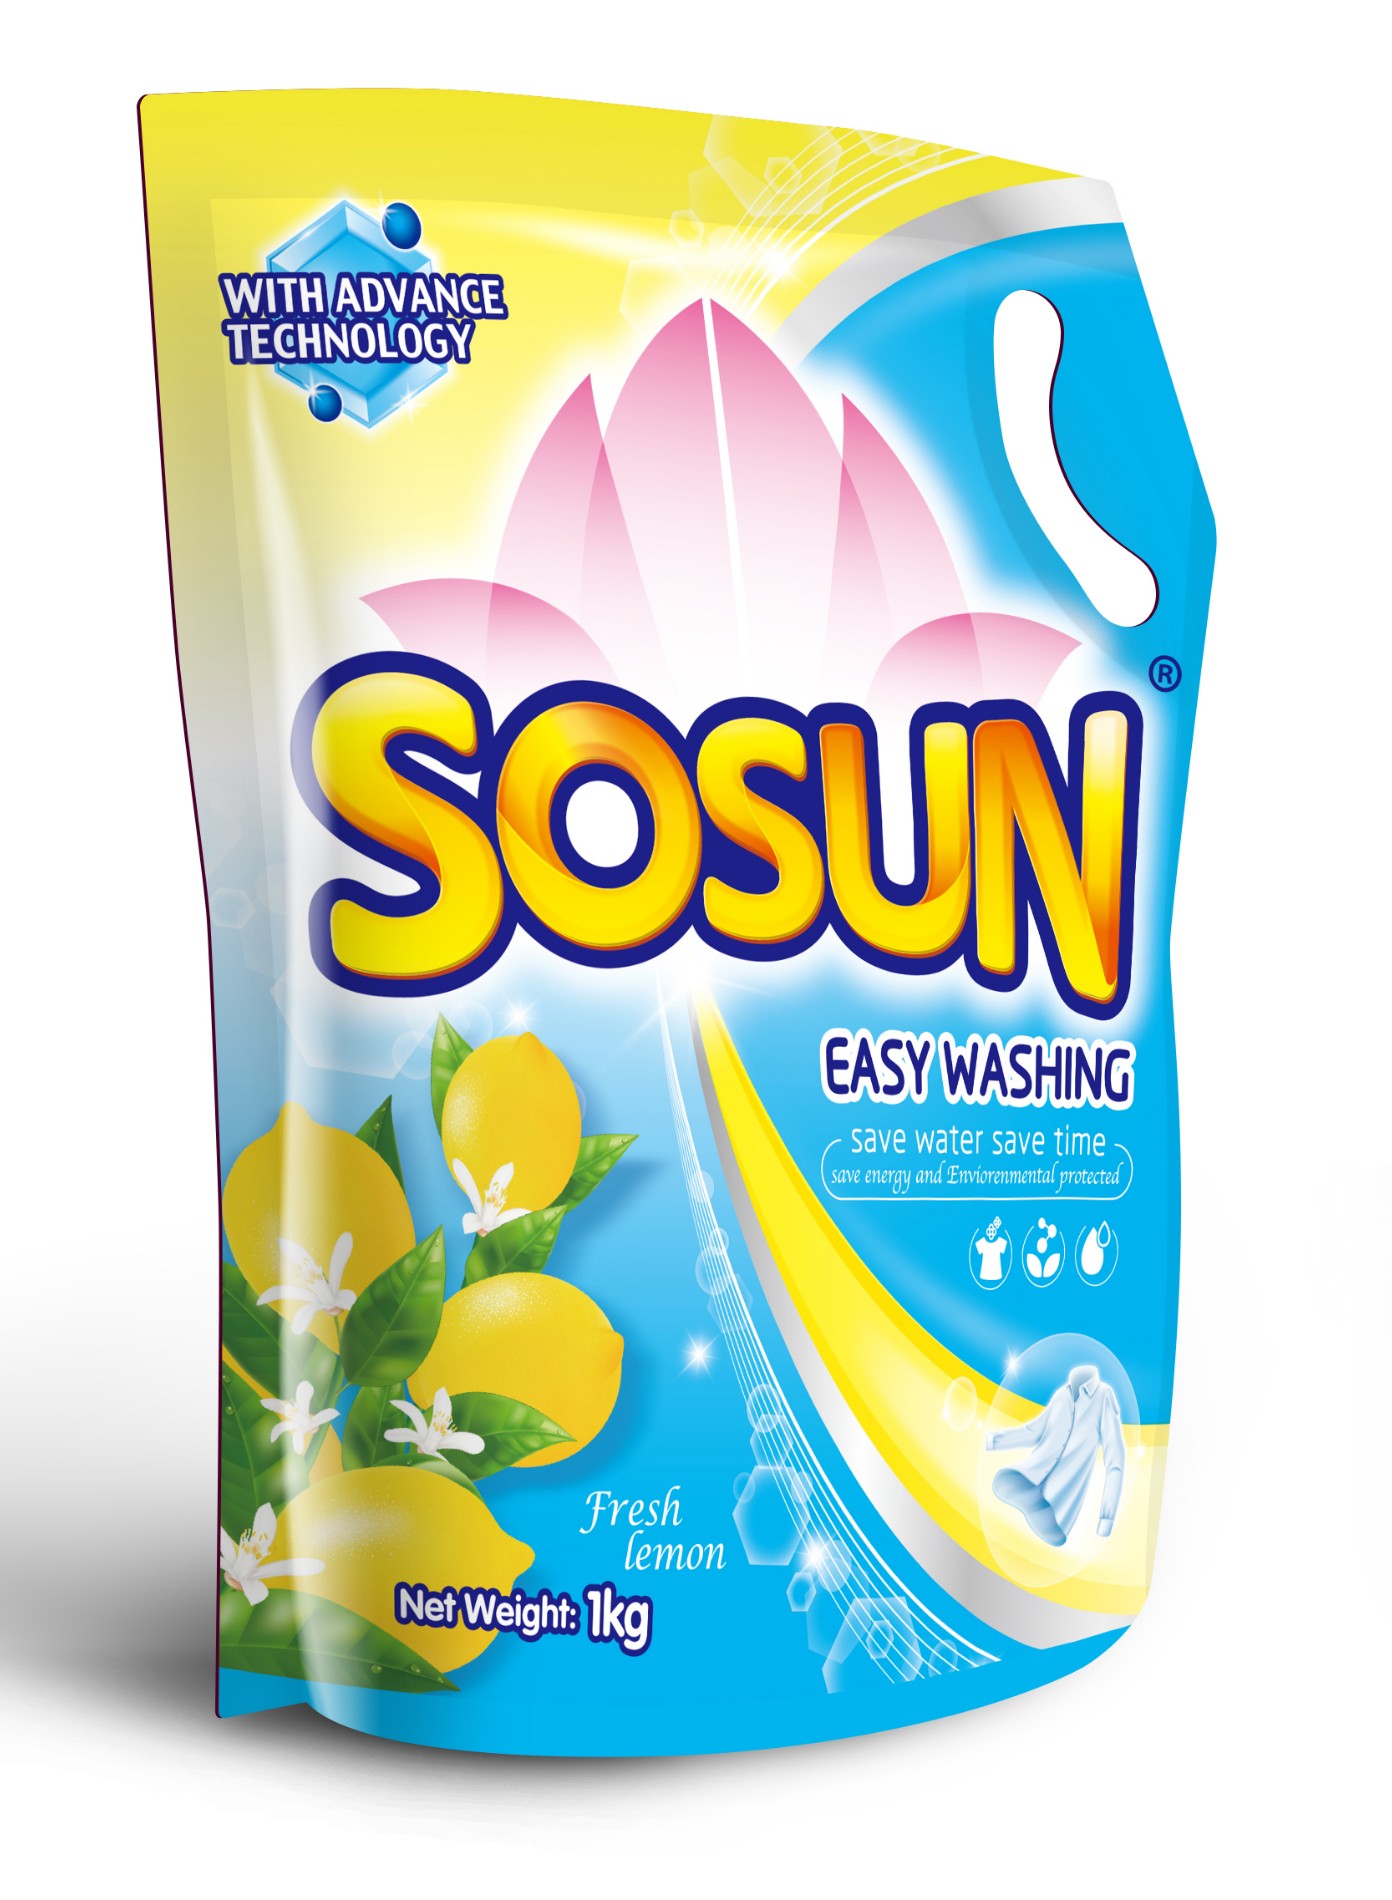 Liquid detergent for india market